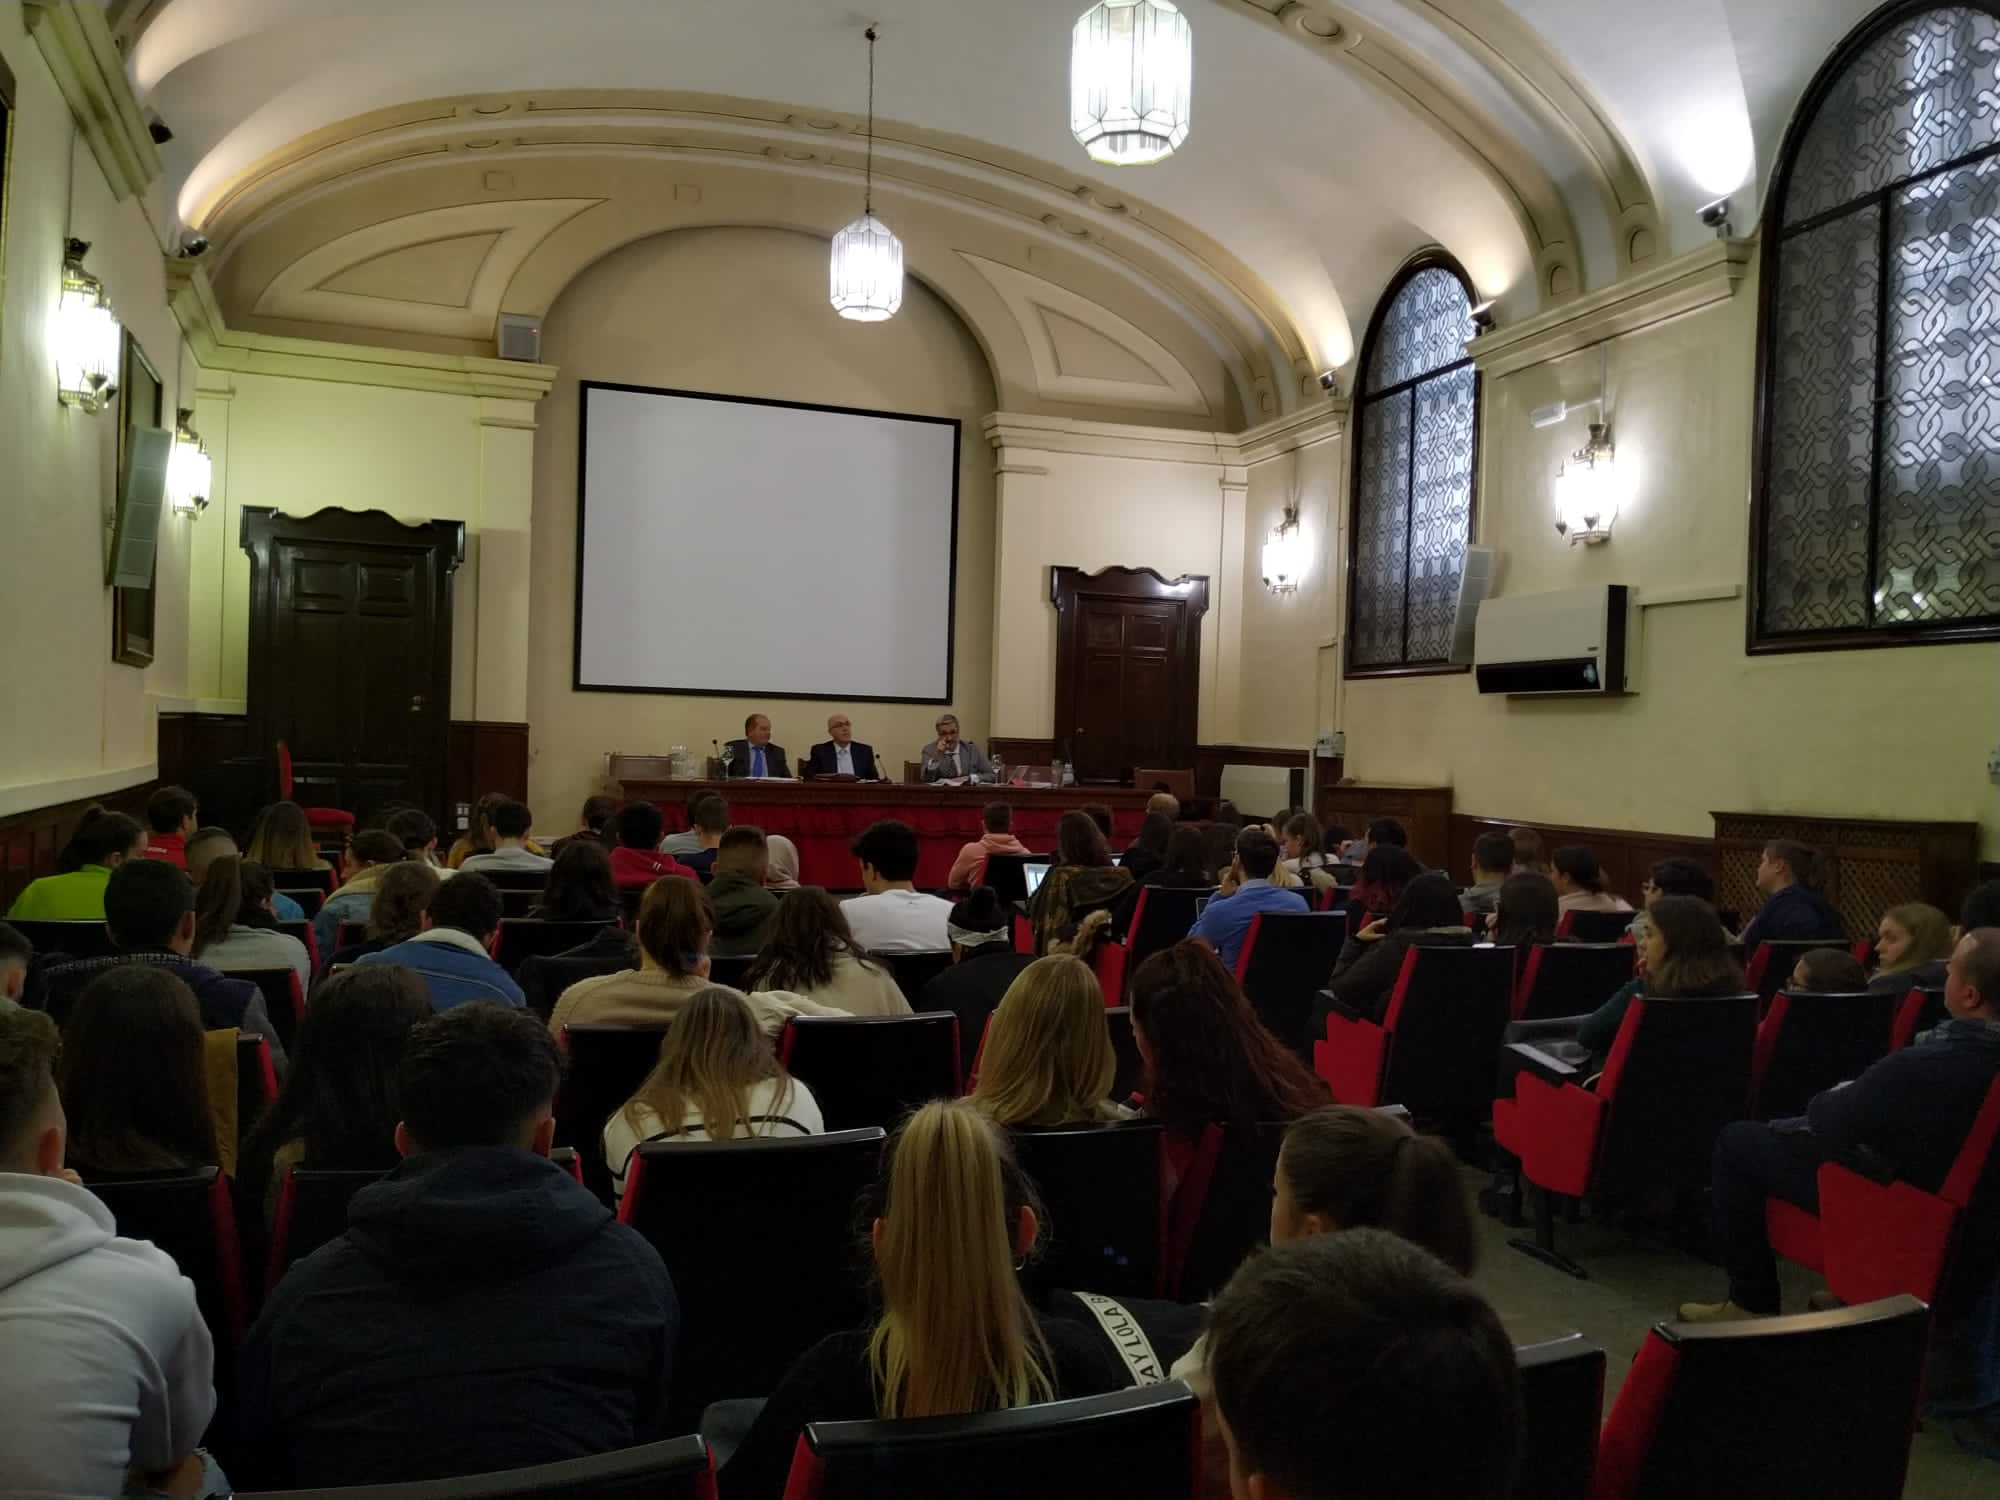 Imagen tomada desde el fondo de la sala en la que se puede ver la intervención de los profesores Carrera Hernández y Martín Rodríguez